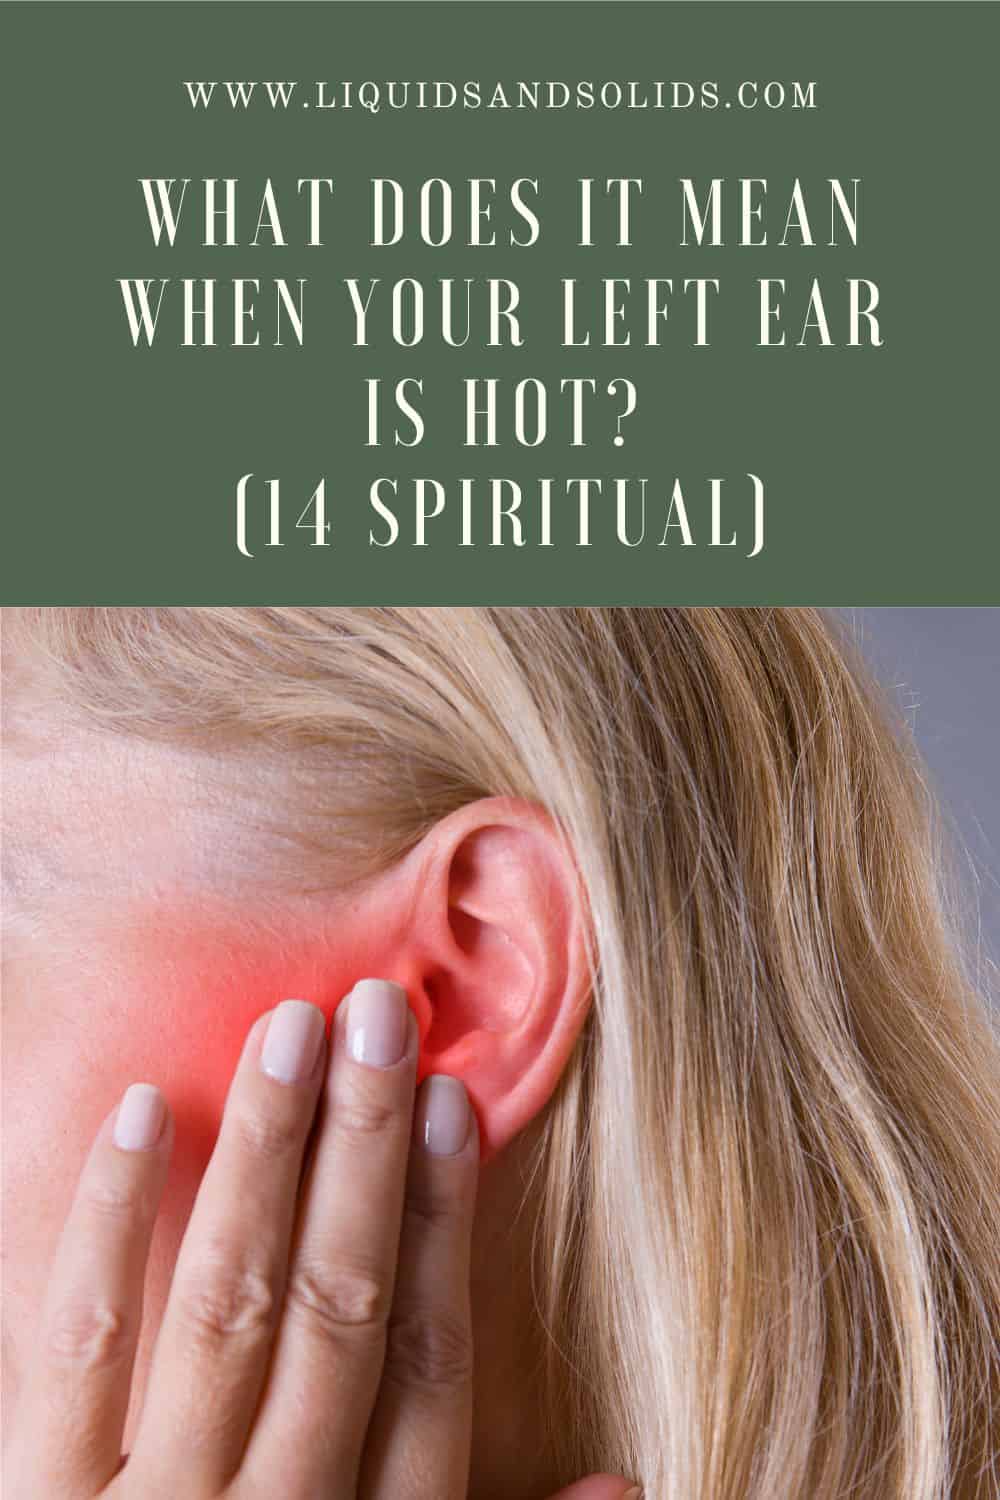  Mit jelent, ha a bal füled forró? (14 spirituális jelentés)